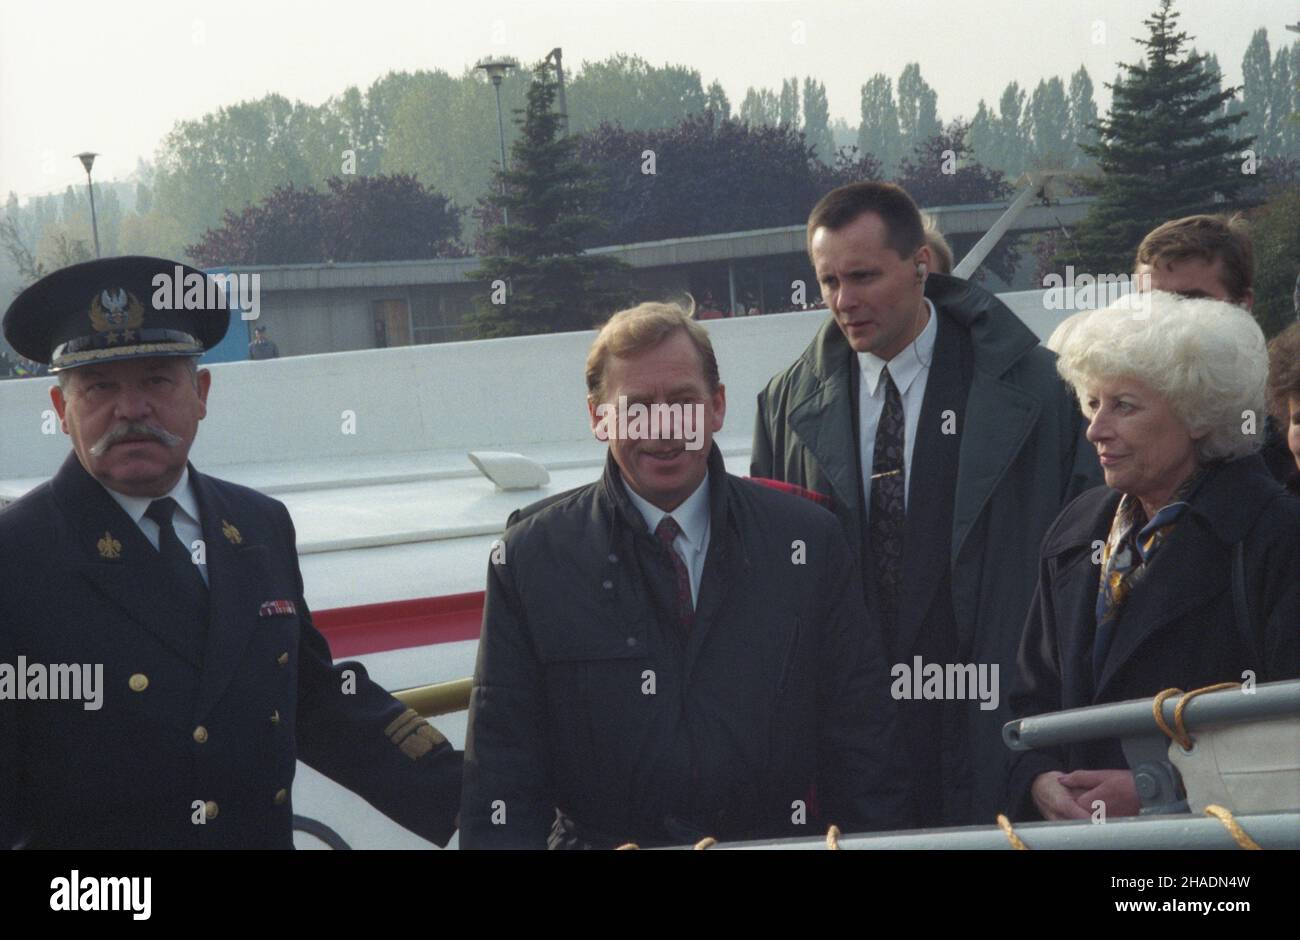 Gdañsk 22.10.1993. Prezydent Czech Vaclav Havel przebywa³ z wizyt¹ w Polsce 20-22 paŸdziernika. Rejs na Westerplatte na ORP Kaszub. Nz. m.in.: dowódca Marynarki Wojennej adm. Romuald Waga (L), prezydent Vaclav Havel (2L) z ¿on¹ Olg¹ (P). mw  PAP/Stefan Kraszewski         Gdansk 22 October 1993. President of the Czech Republic Vaclav Havel paid a visit to Poland on October 20 to 22. A trip to Westerplatte aboard the ORP Kaszub ship. Pictured among others: Navy Commander Romuald Waga (L), President Vaclav Havel (2L) with wife Olga (R).  mw  PAP/Stefan Kraszewski Stock Photo